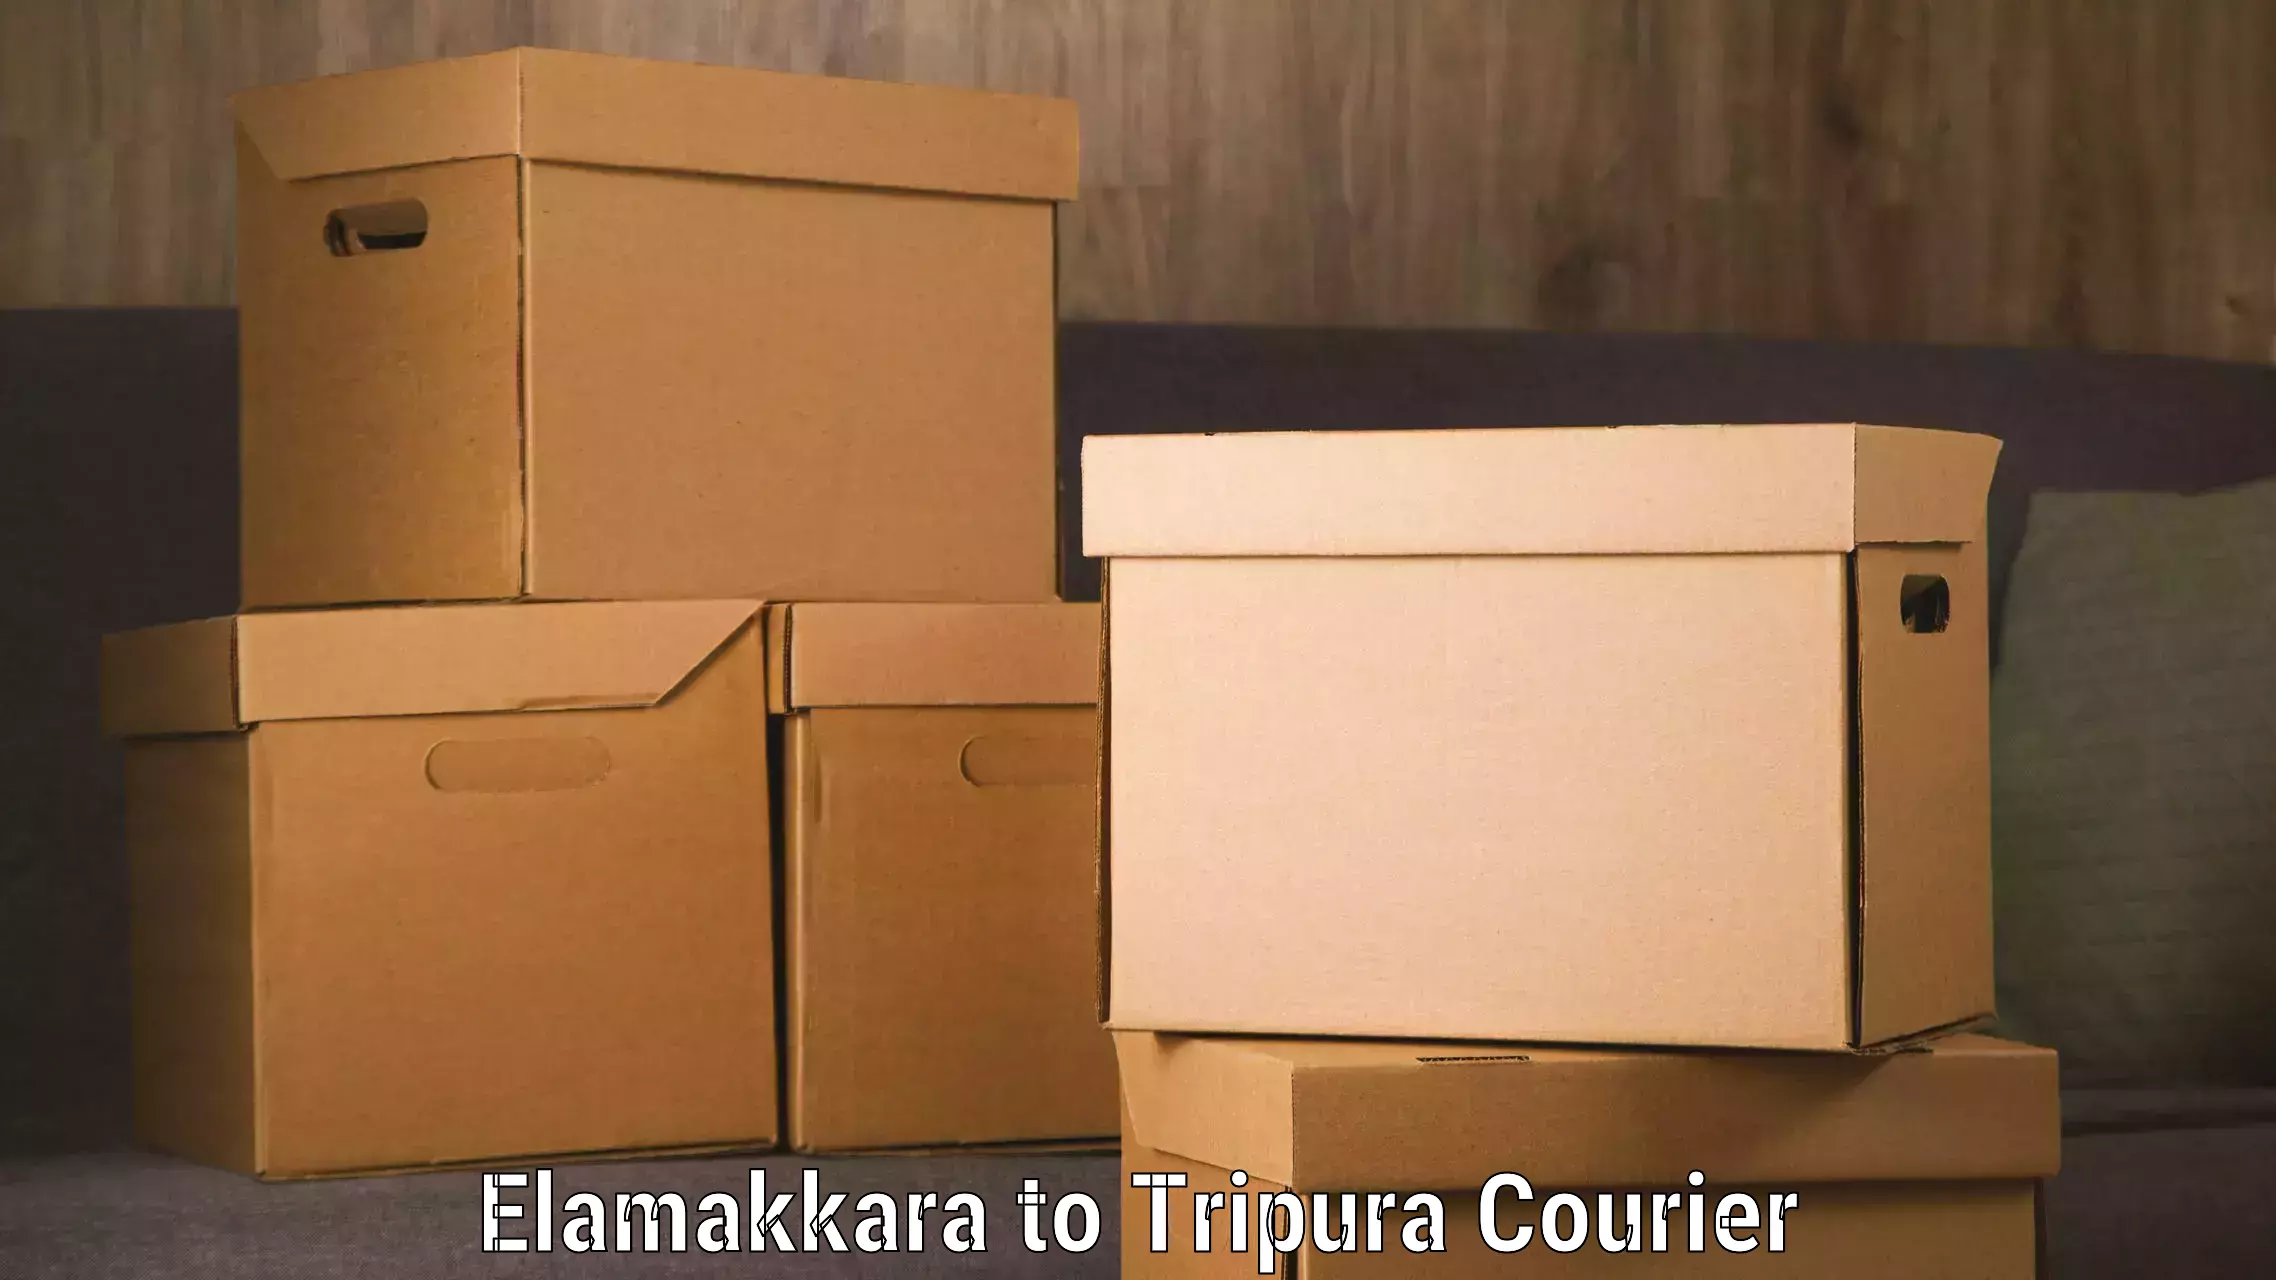 Urgent courier needs Elamakkara to Manughat